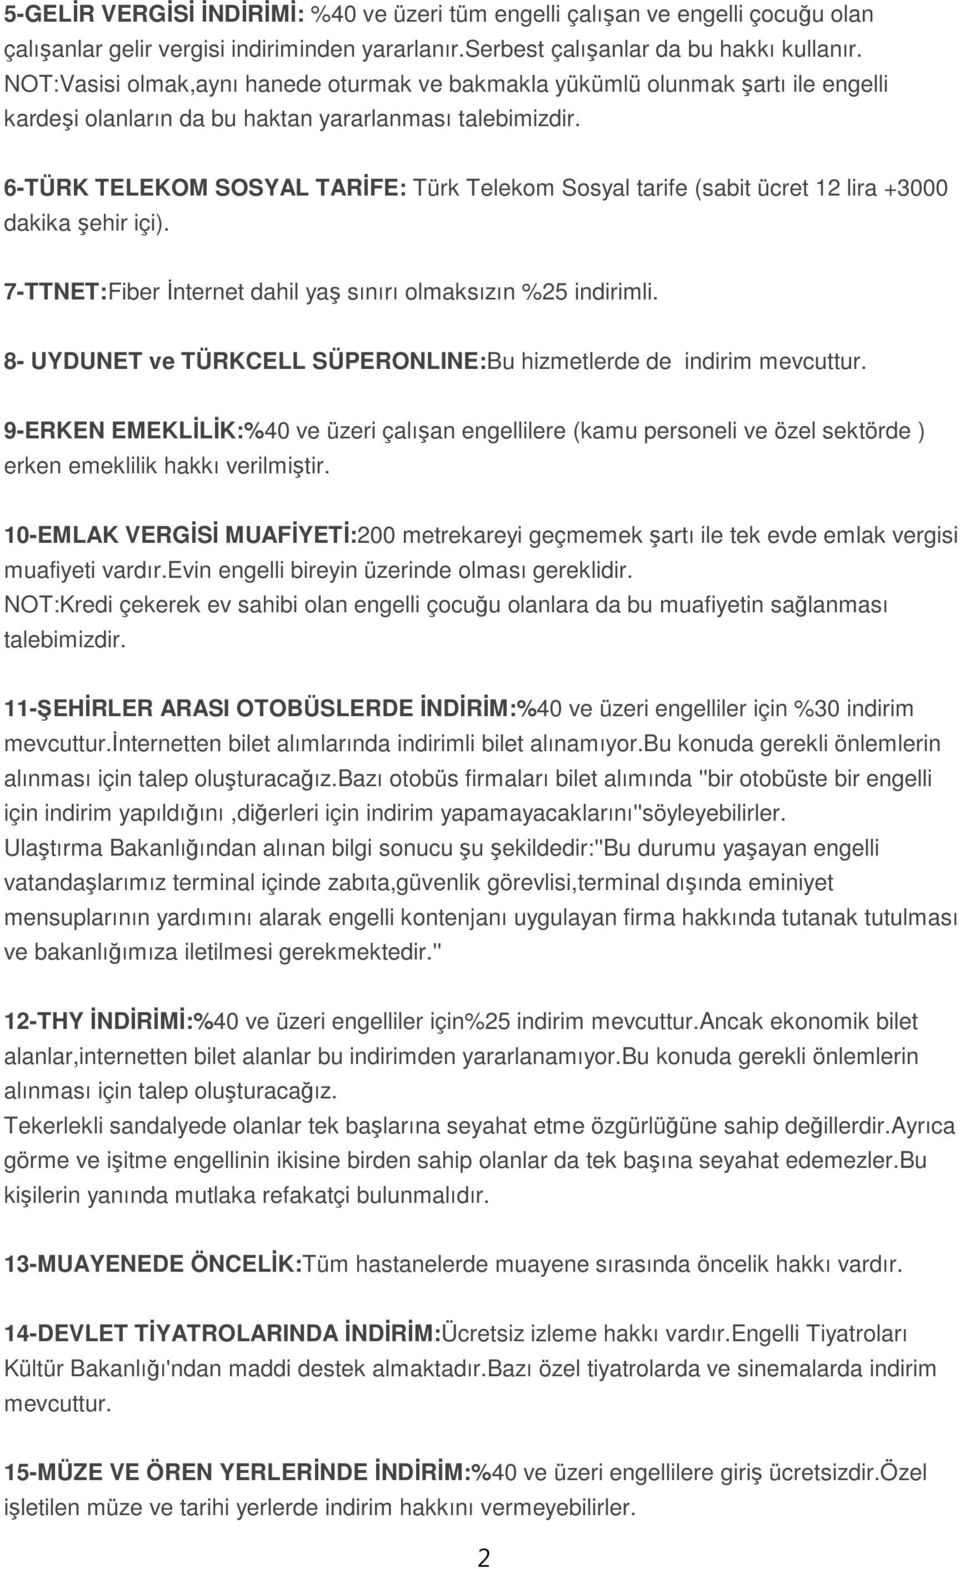 6-TÜRK TELEKOM SOSYAL TARİFE: Türk Telekom Sosyal tarife (sabit ücret 12 lira +3000 dakika şehir içi). 7-TTNET:Fiber İnternet dahil yaş sınırı olmaksızın %25 indirimli.